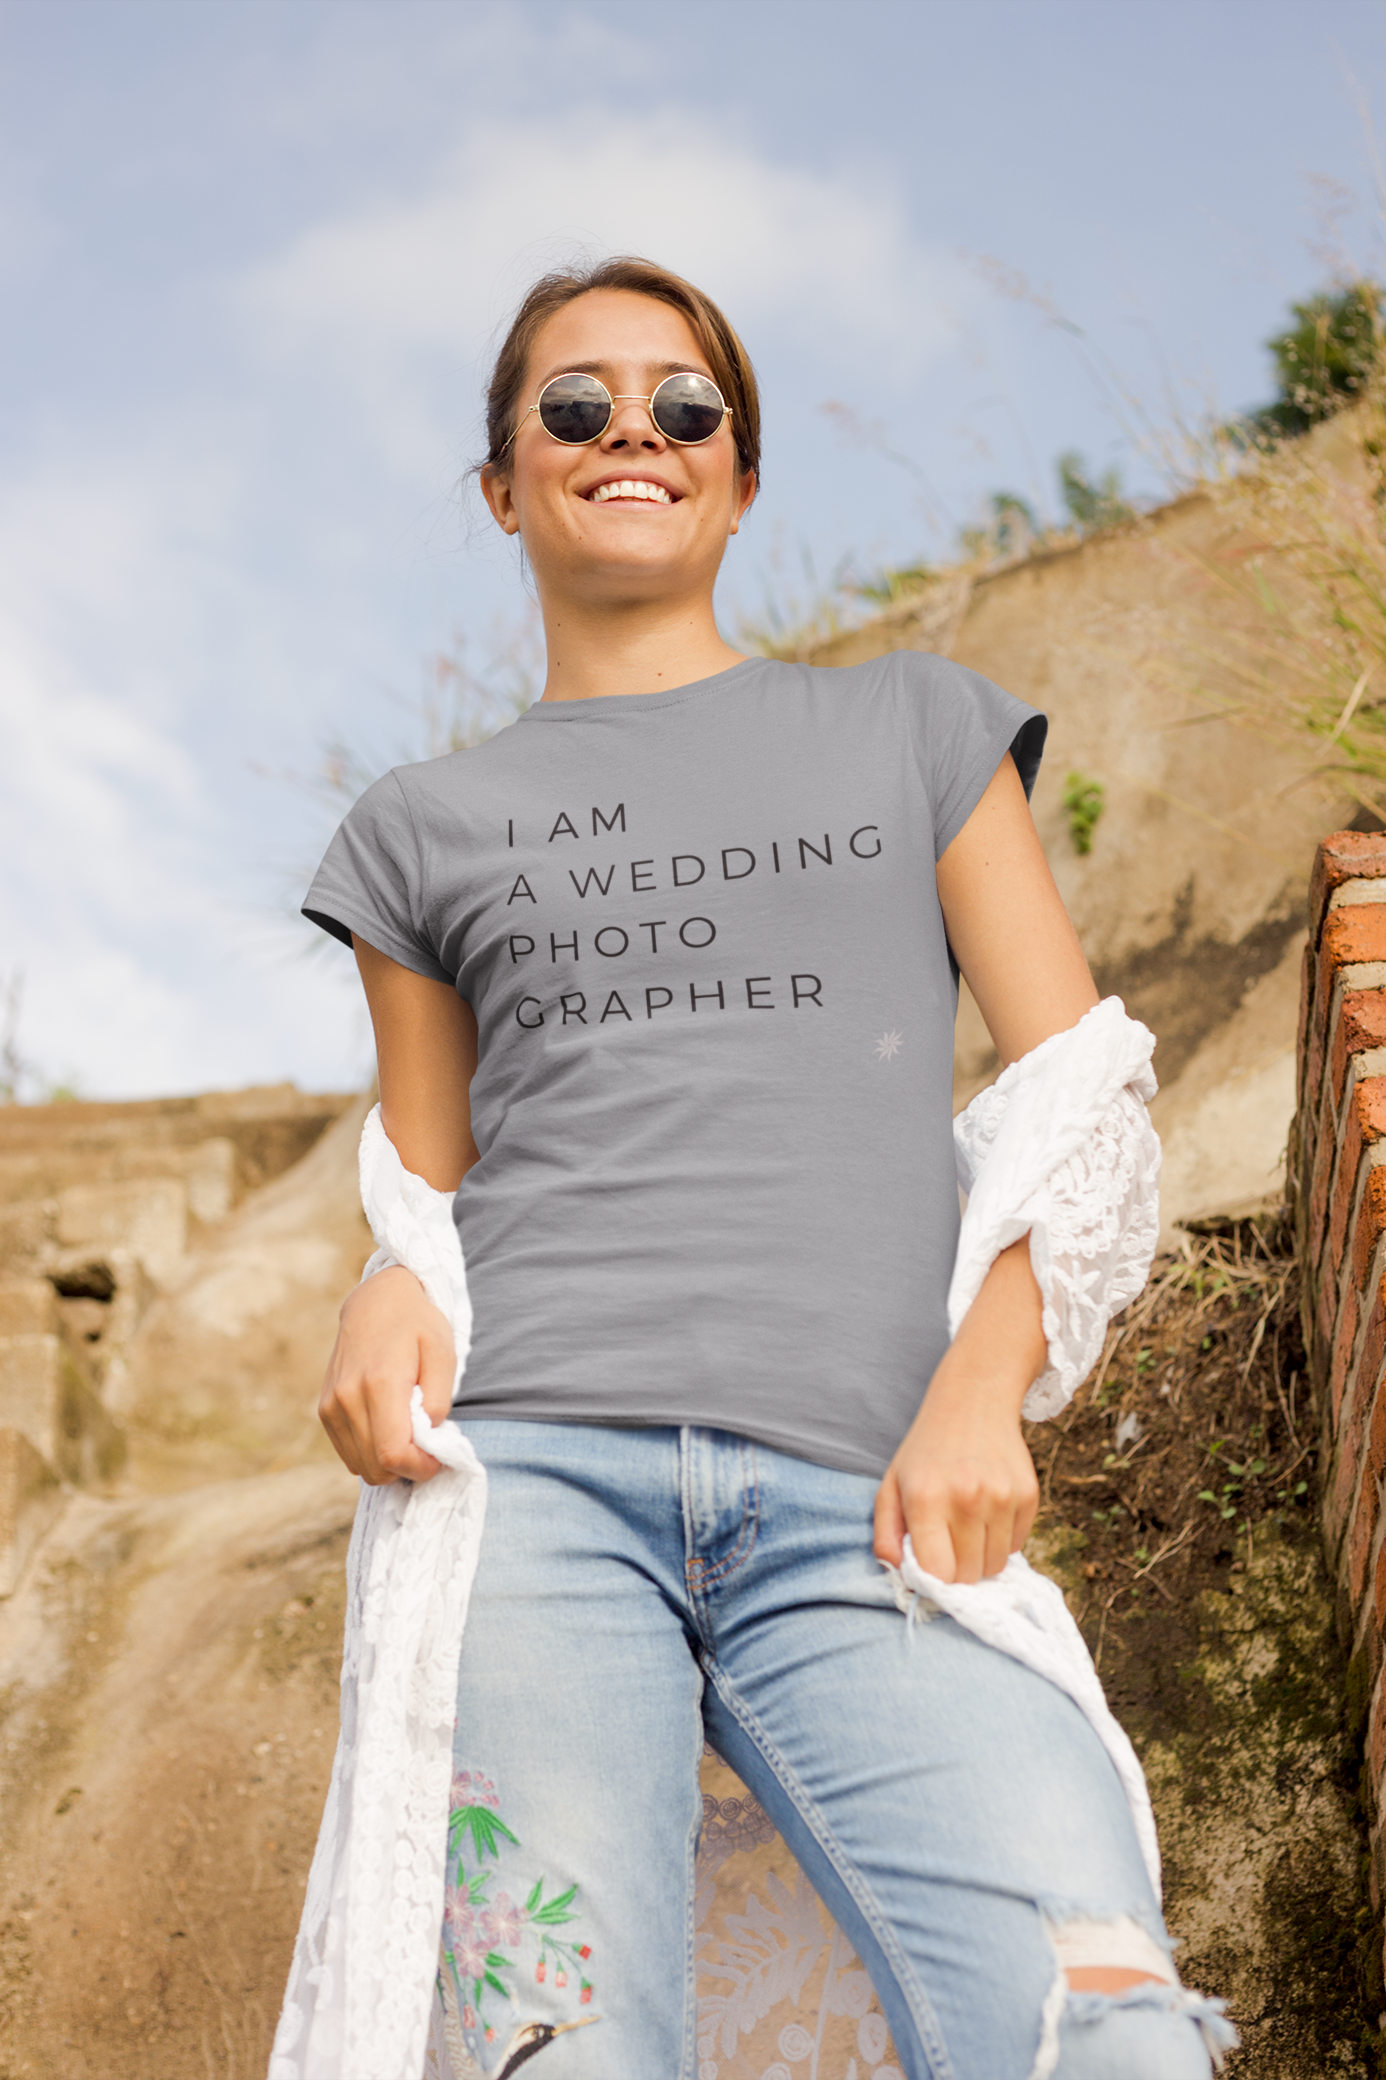 I AM A WEDDING PHOTOGRAPHER Women's Fit Tee